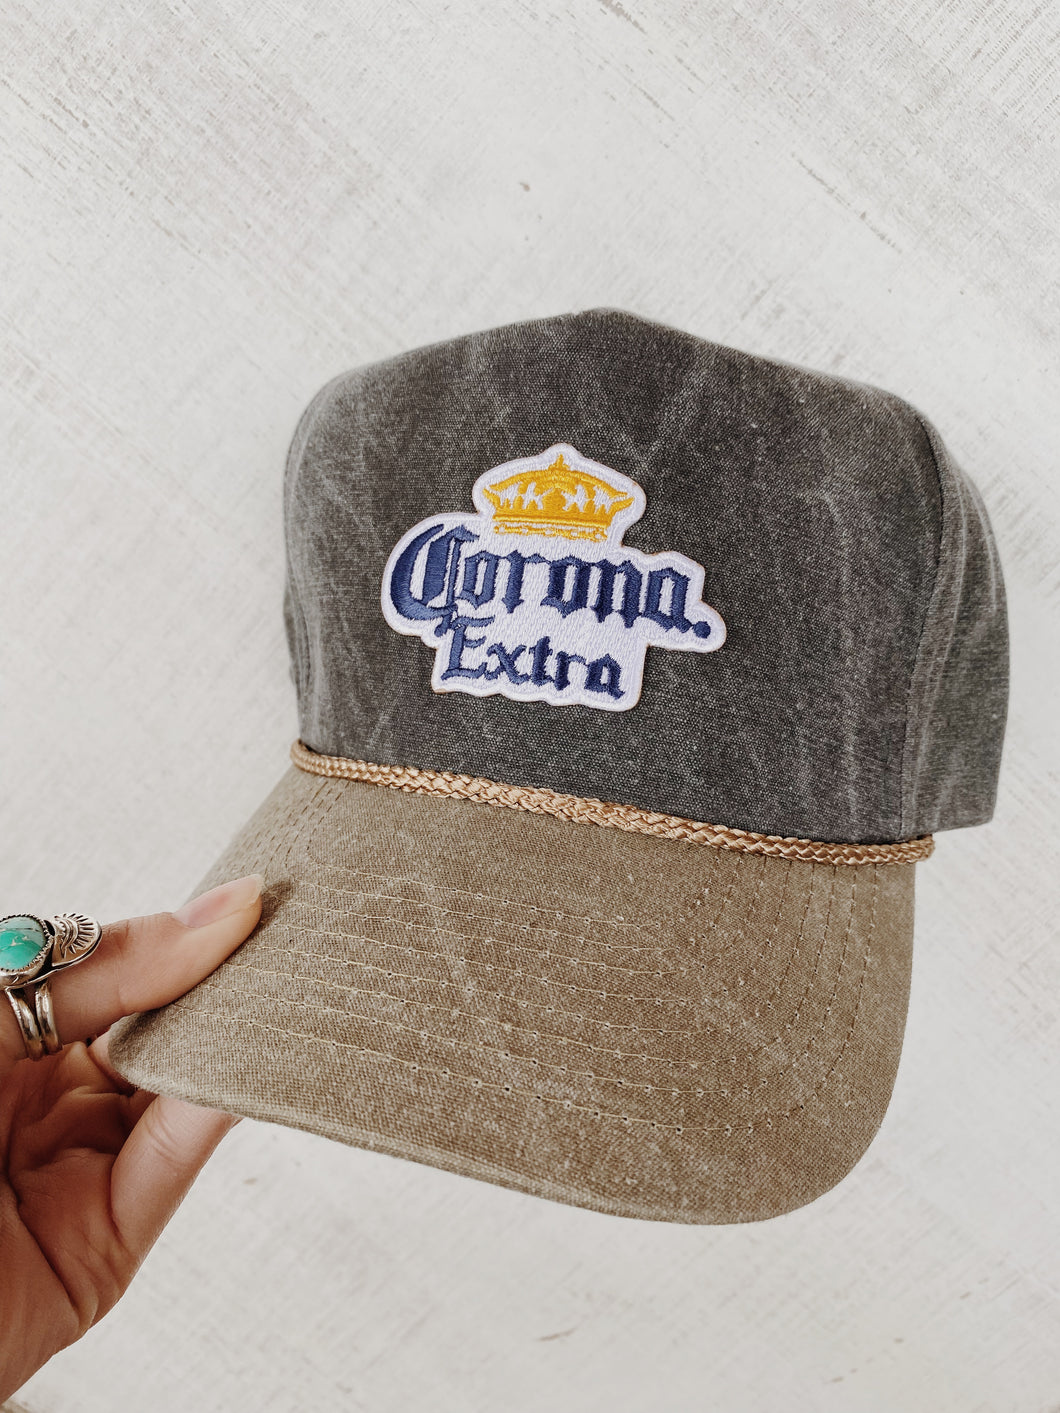 Corona Hat